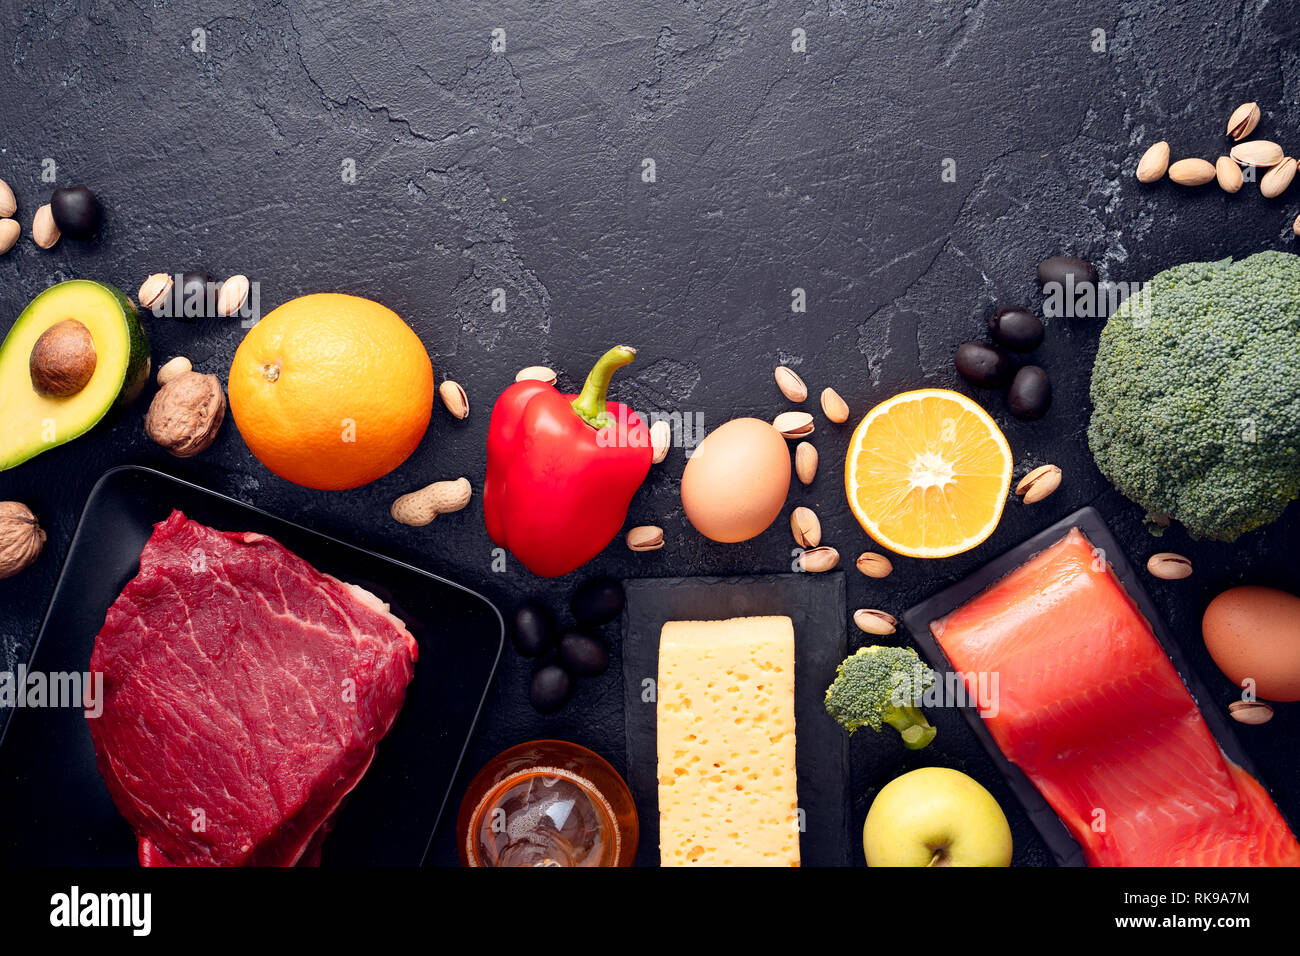 Imagen de los productos alimentarios en la tabla de piedra. Espacio vacío en la parte superior del texto. Foto de stock